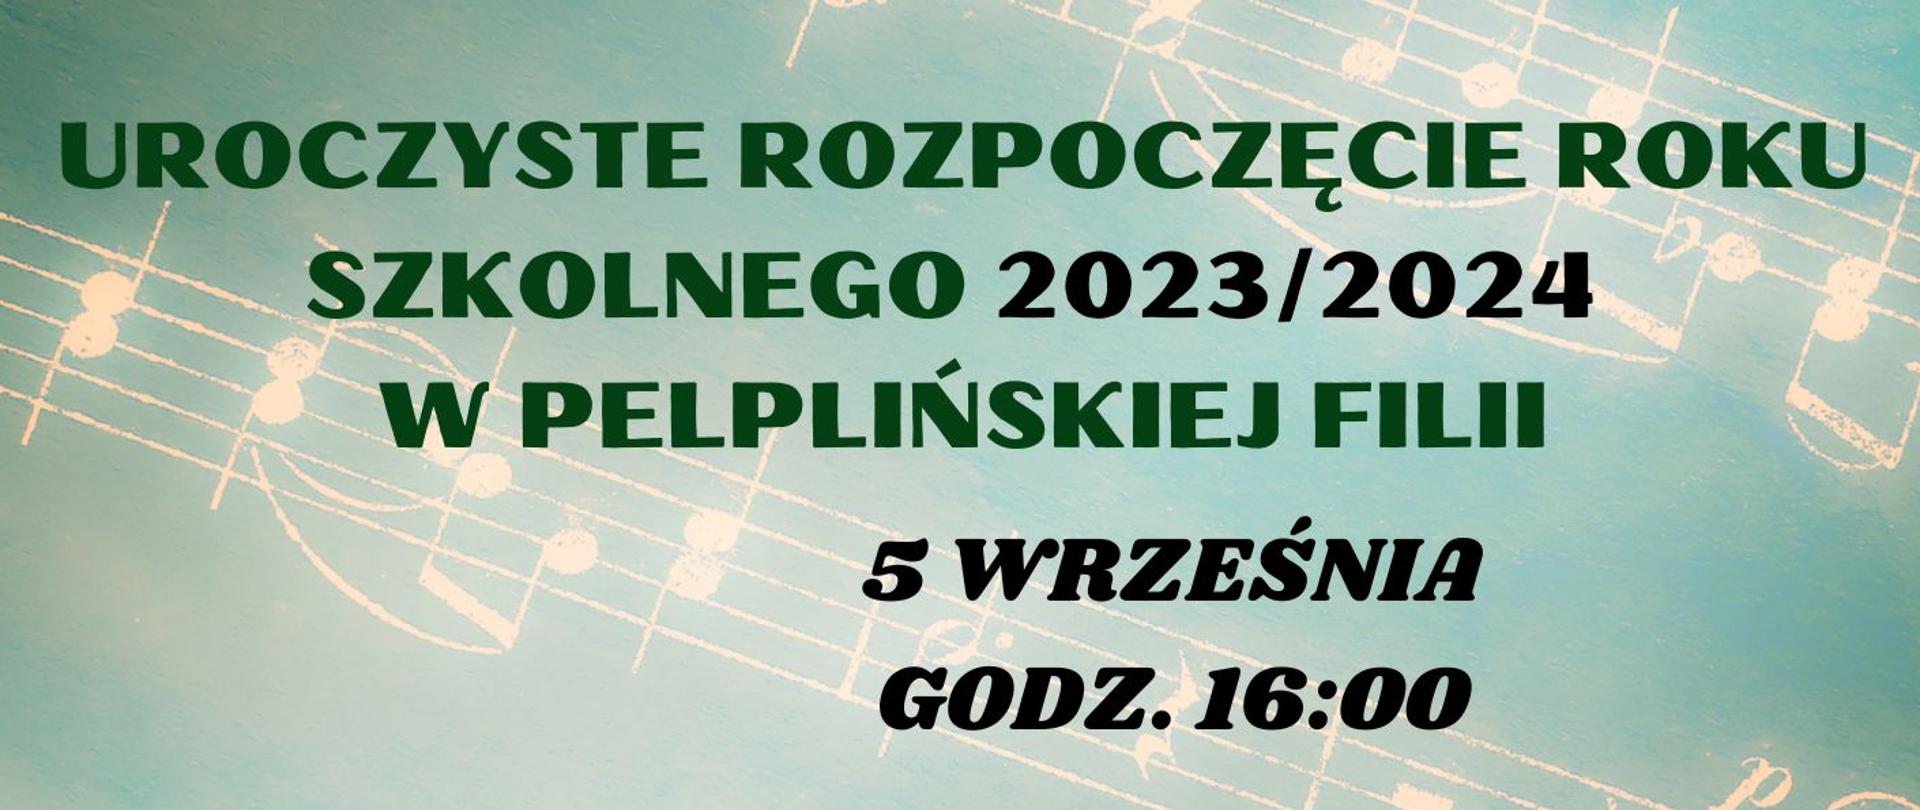 Uroczyste Rozpoczęcie Roku Szkolnego 2023 2024 w pelplińskiej filii 5 września godz 16
litery ciemnozielone oraz czarne tło muzyczne nuty